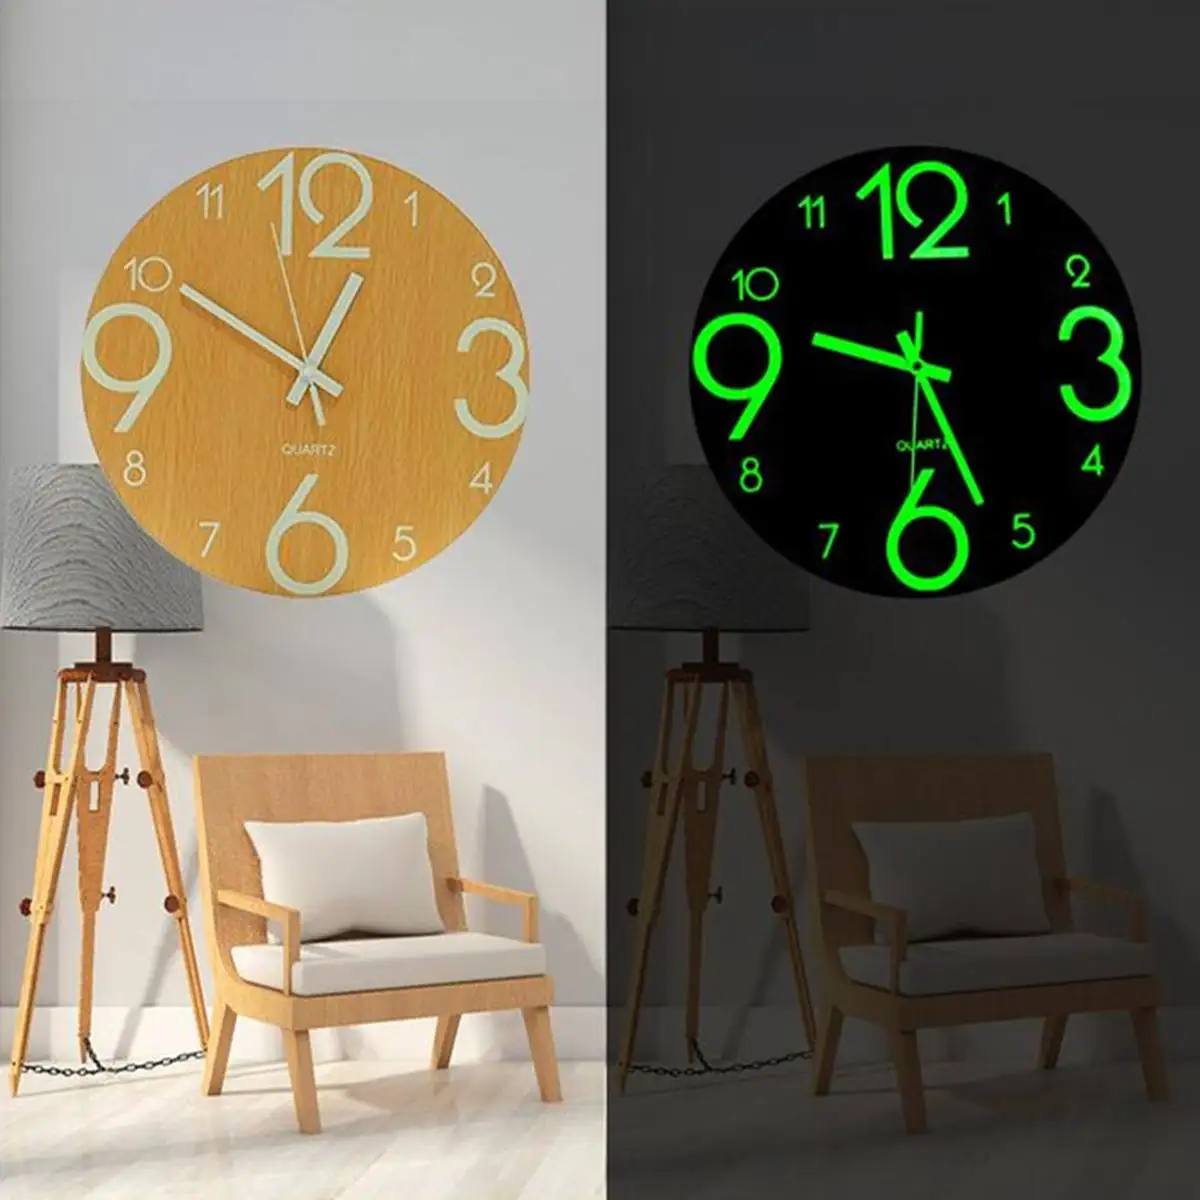 

DIY 3D Digital Number Wall Clock Luminous Hanging Clock Acrylic Brief Silent Clock Glow Dark Acrylic Quiet DIY Wall Clock Modern